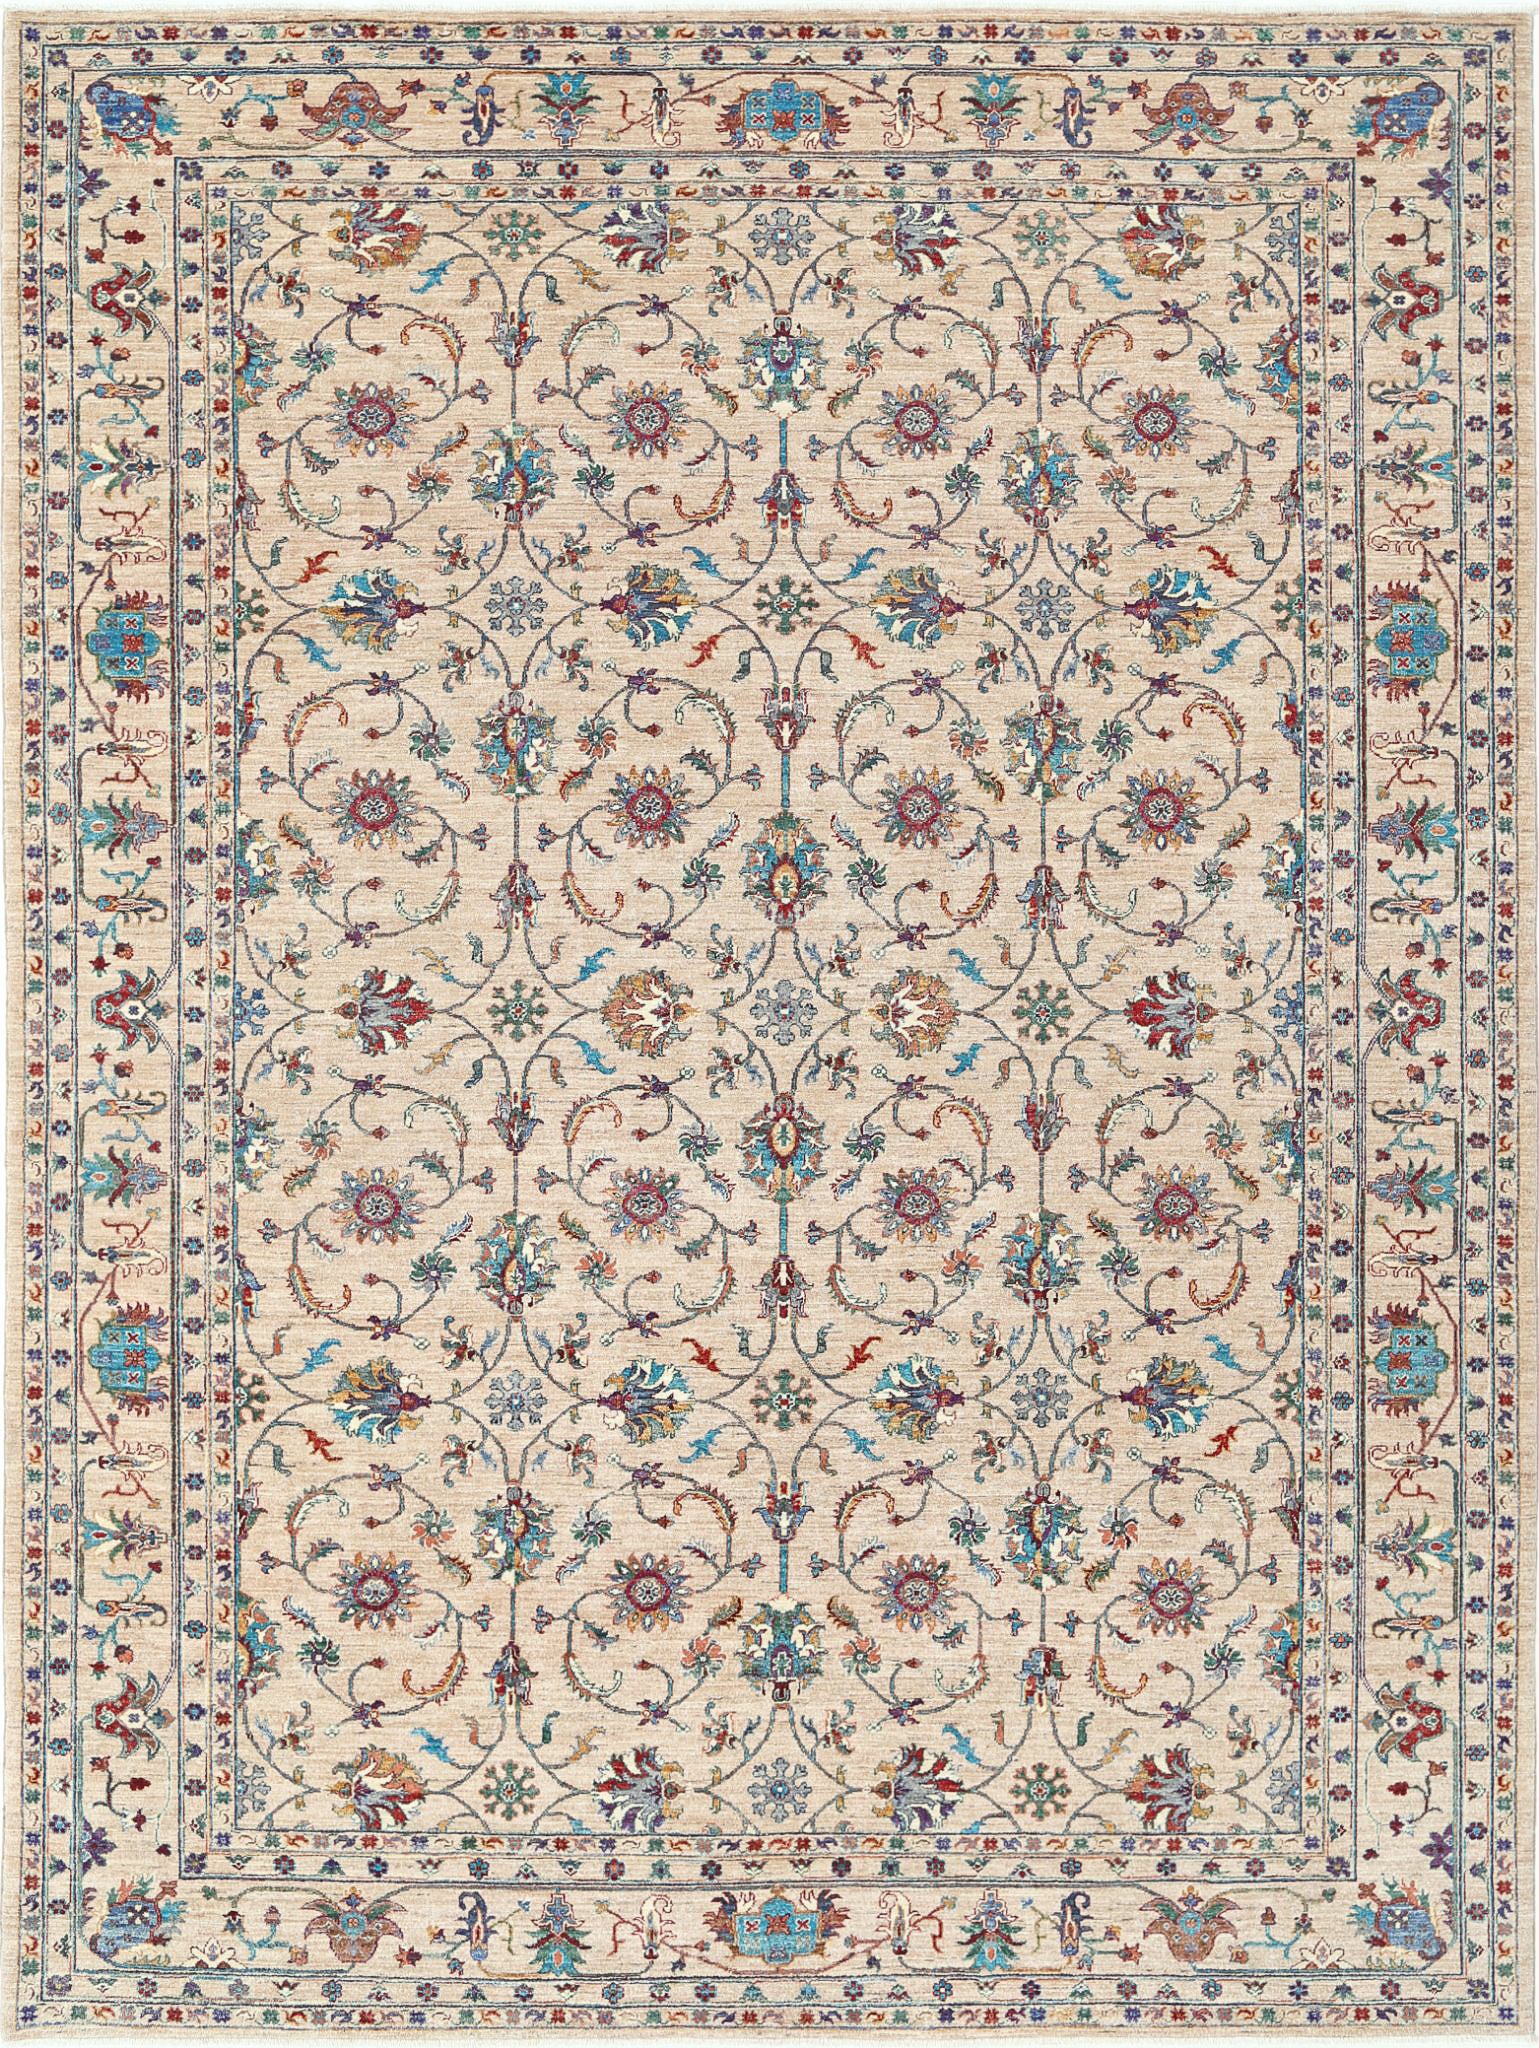 Jasmine-hand-knotted-sultani-wool-rug-5024539.jpg